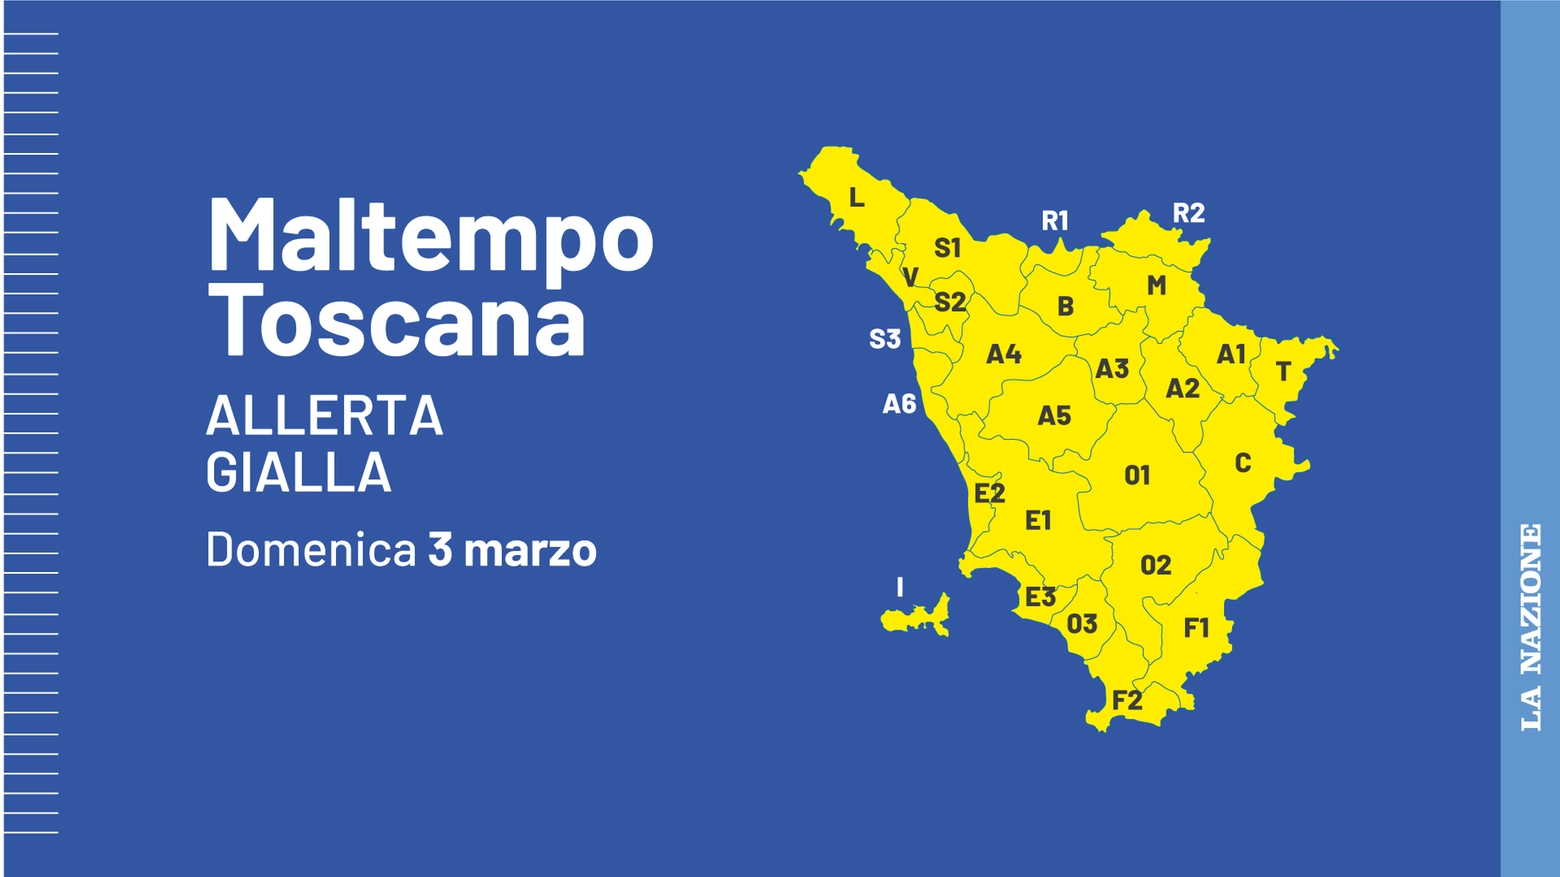 Allerta gialla in Toscana per domenica 3 marzo